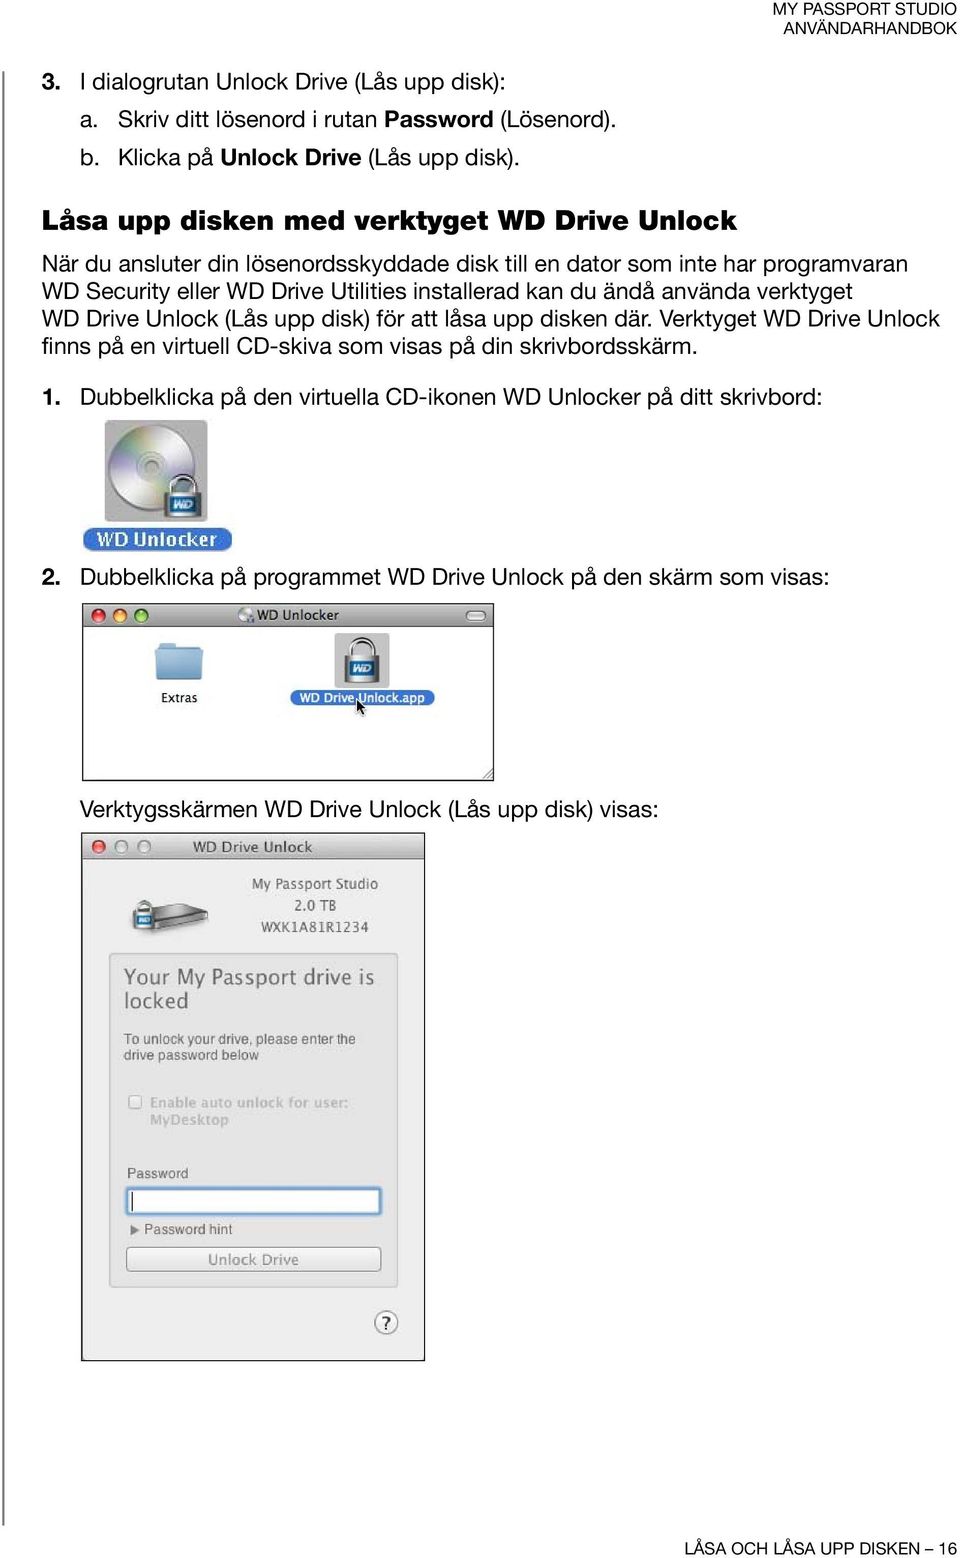 kan du ändå använda verktyget WD Drive Unlock (Lås upp disk) för att låsa upp disken där. Verktyget WD Drive Unlock finns på en virtuell CD-skiva som visas på din skrivbordsskärm.